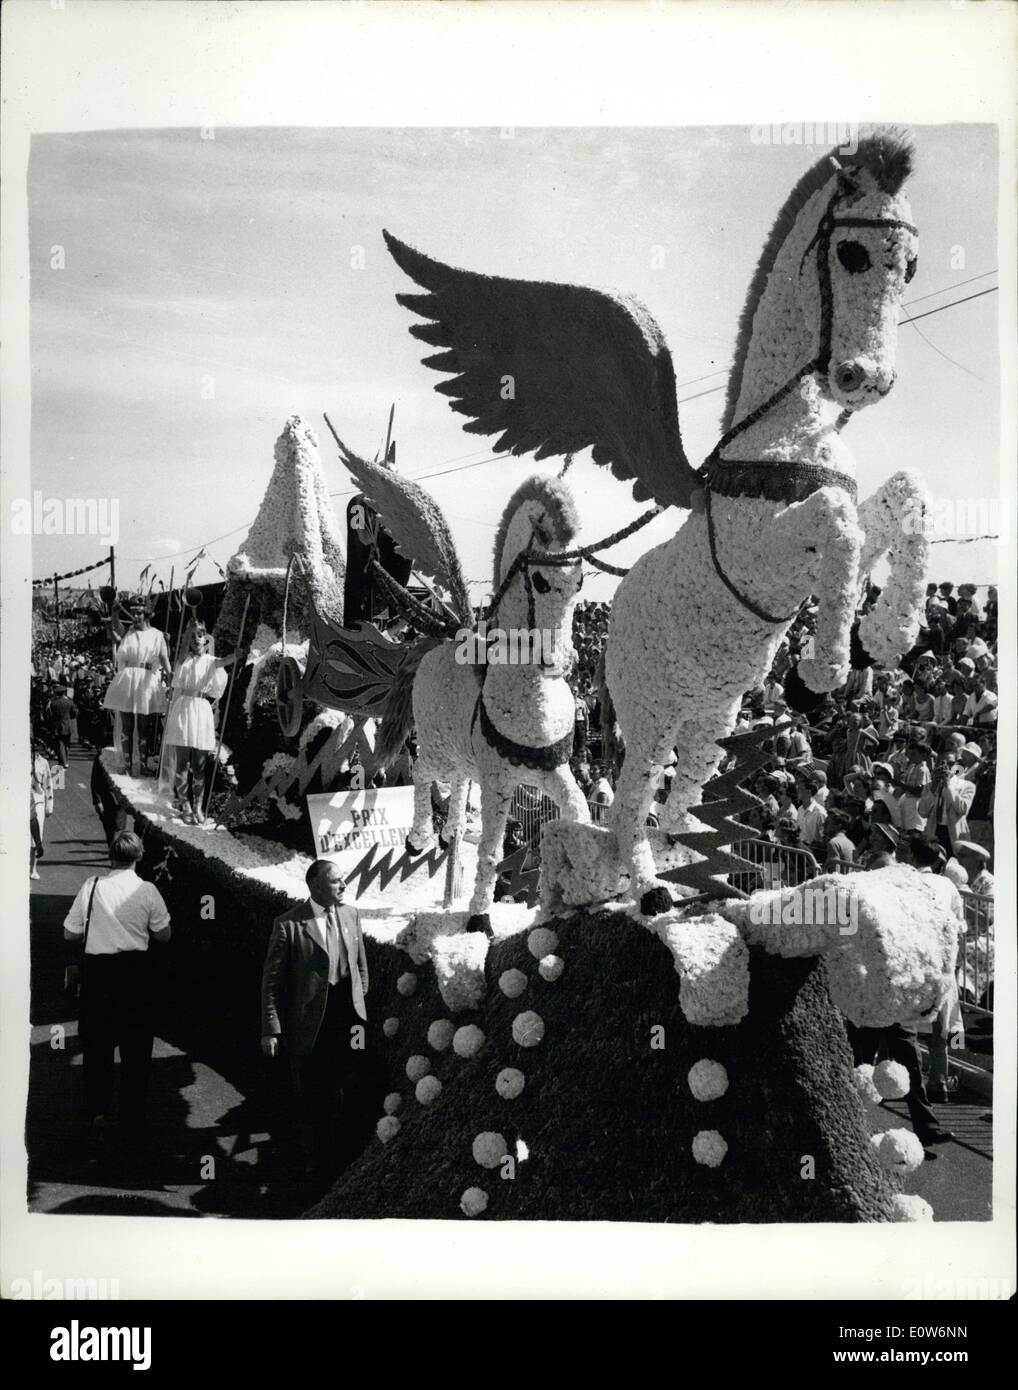 Agosto 08, 1961 - La battaglia annuale dei Fiori - In Jersey.: l'annuale Jersey Battaglia dei Fiori si è svolta oggi - per l'undicesima volta poiché è stato ripreso nel 1951. Esso è stato organizzato per la prima volta nel 1902. La foto mostra il ''Flying Horse'' tableau che ha creato molto interesse - Nella processione di oggi. Foto Stock